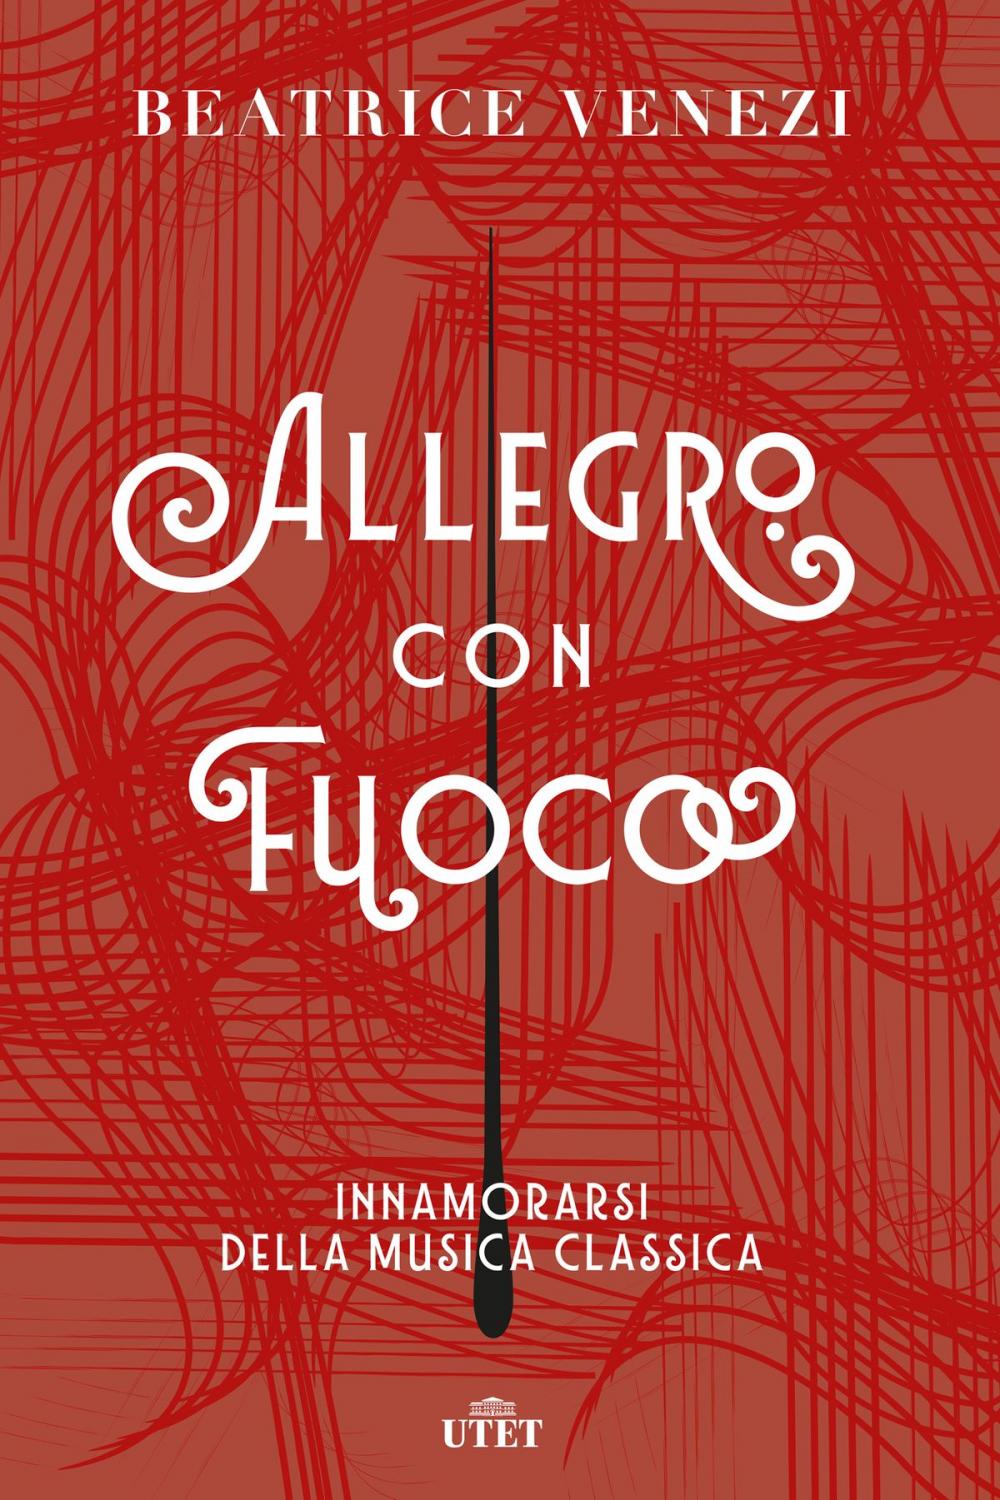 Big bigCover of Allegro con fuoco